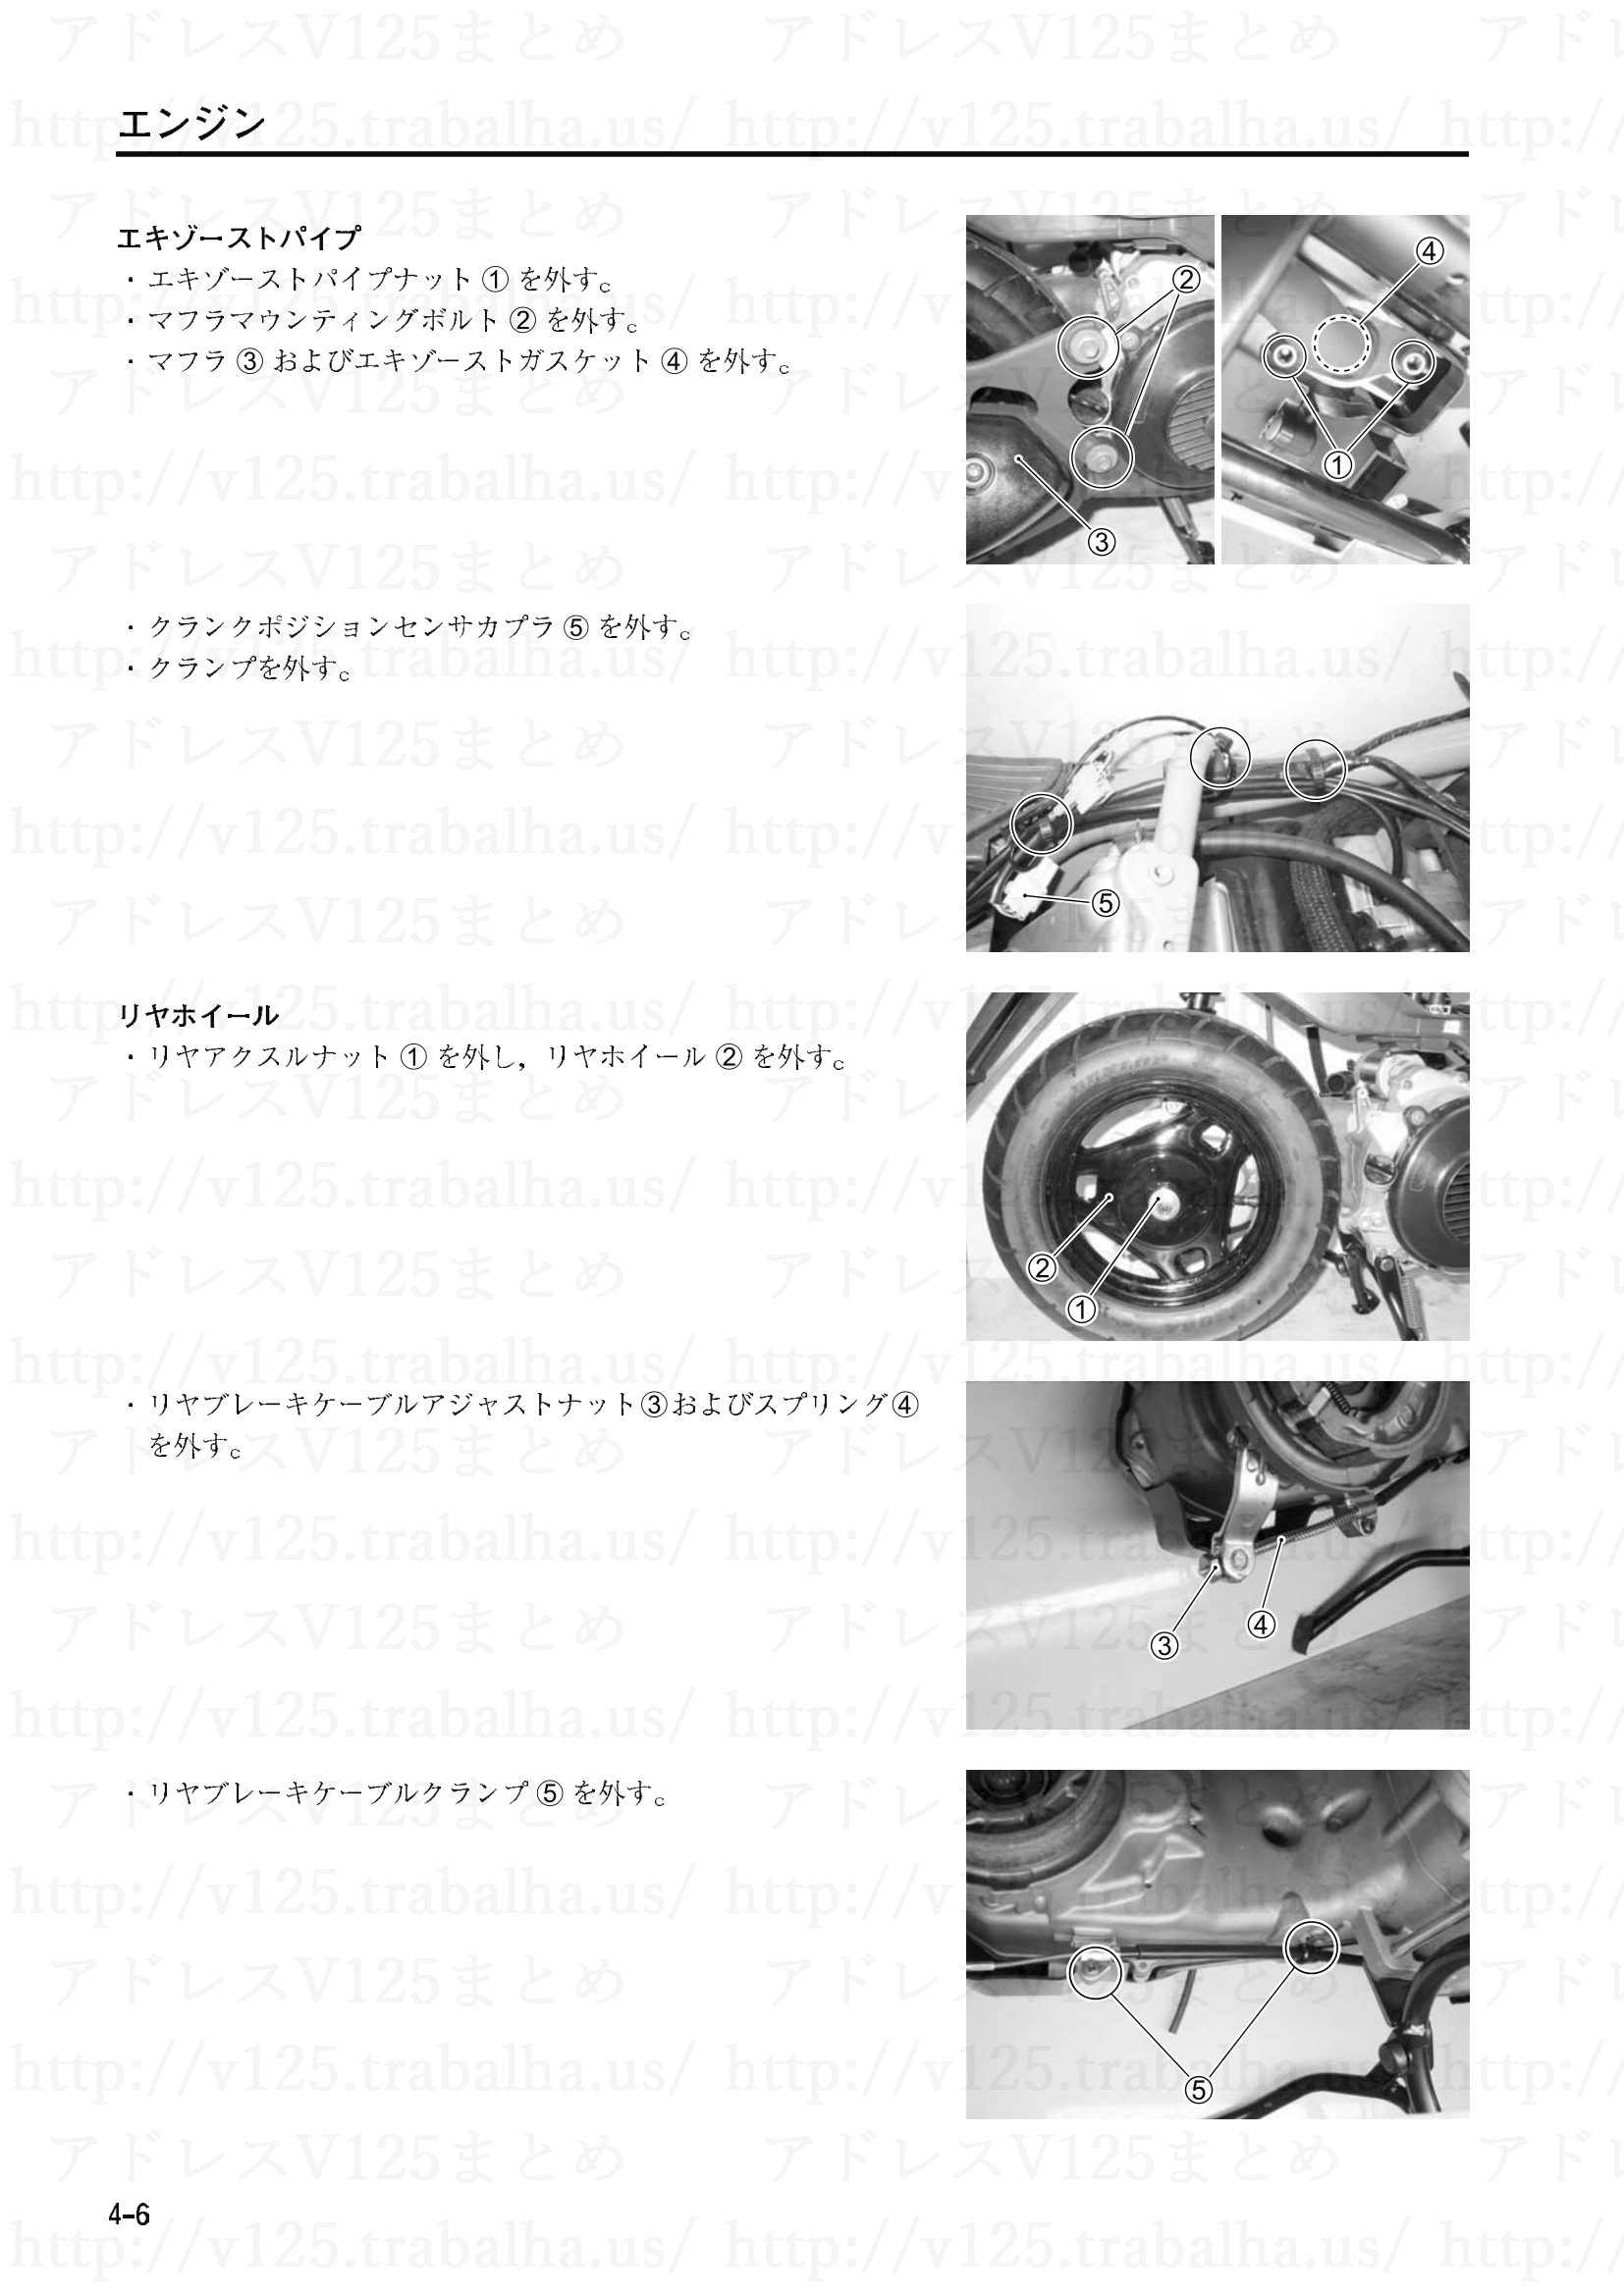 4-6【エンジン】エンジンアッシの脱着3